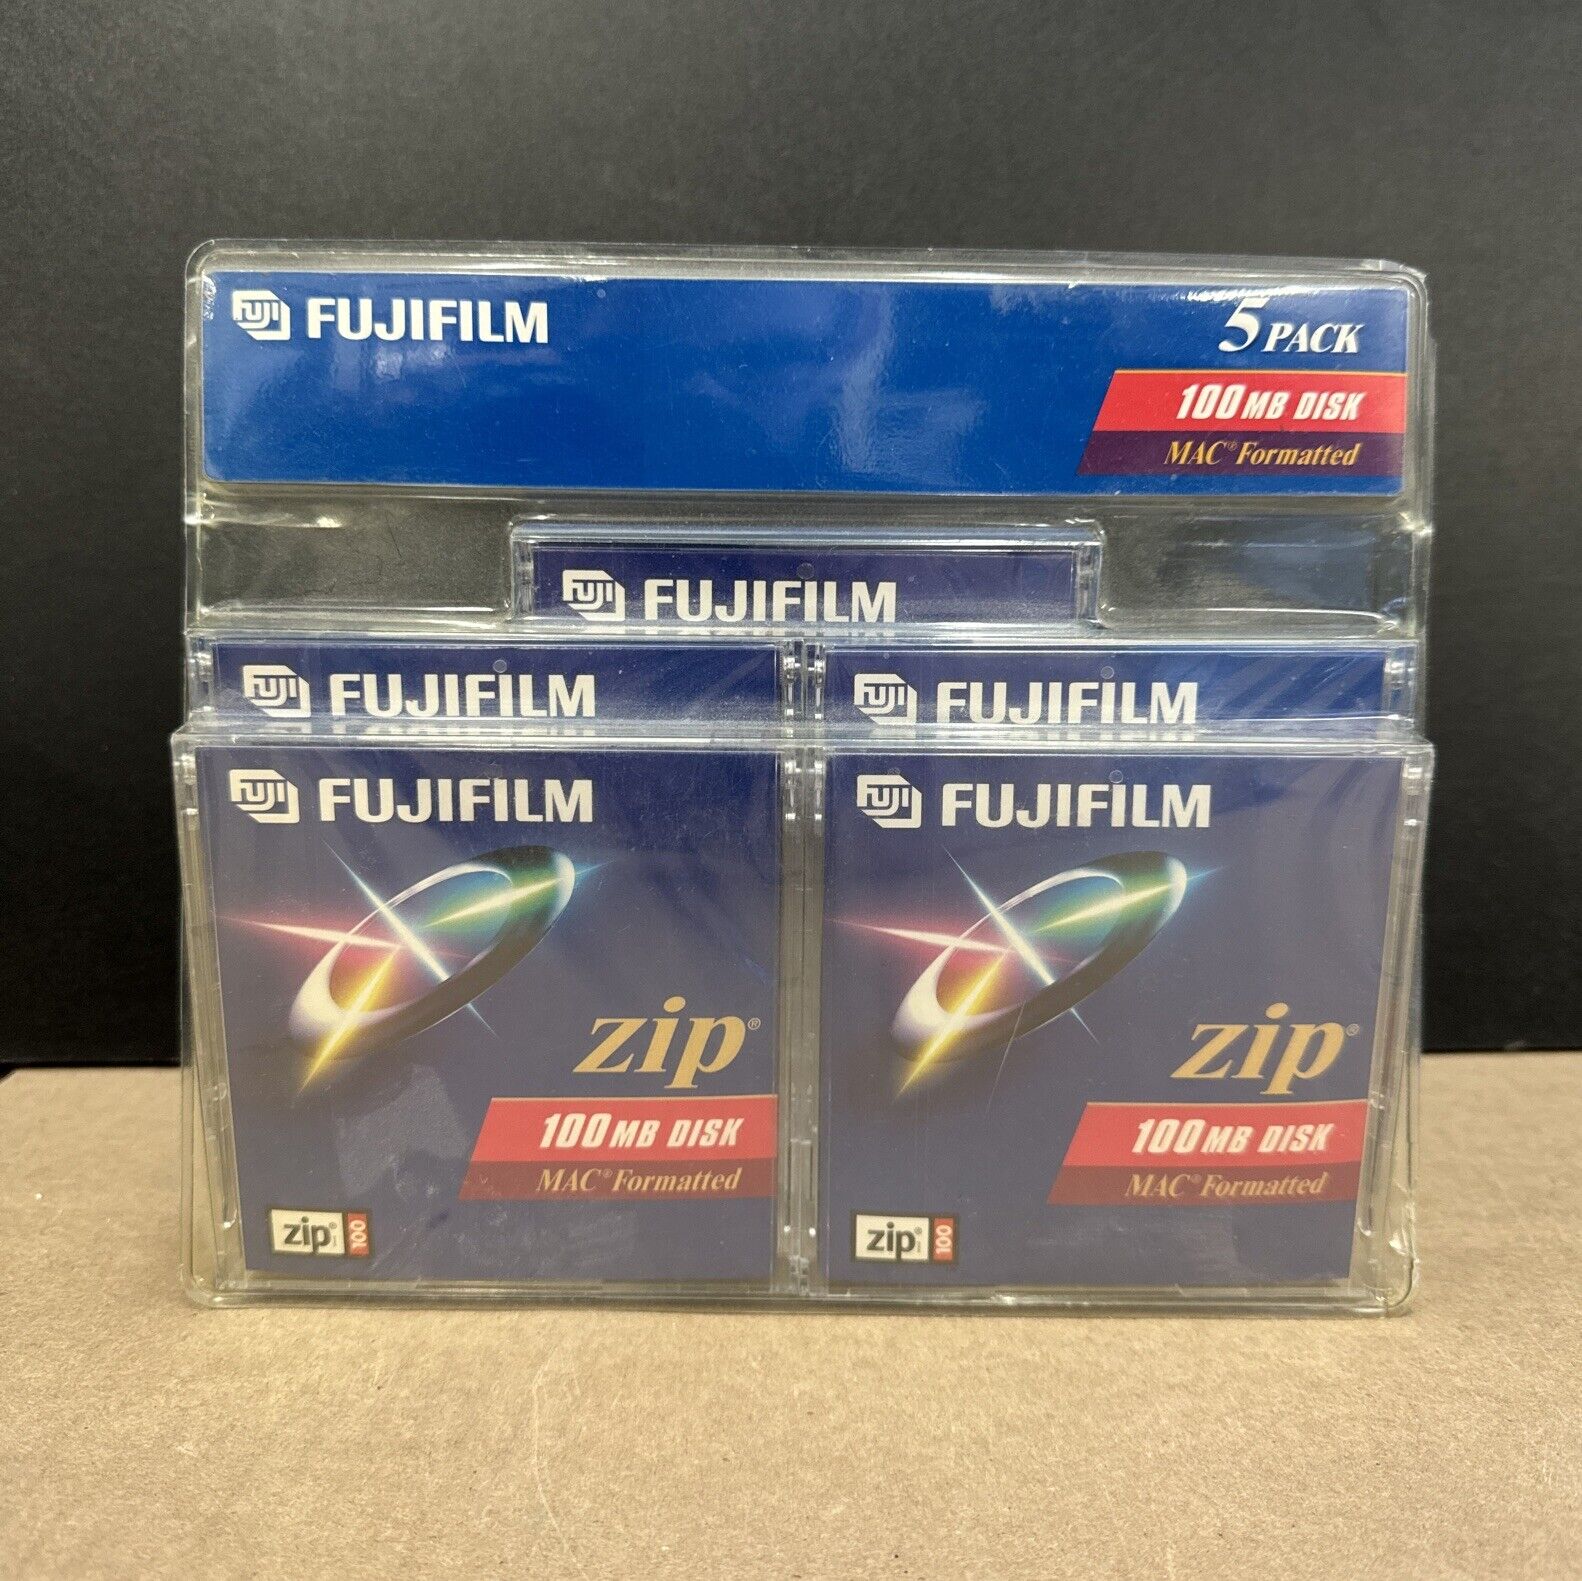 FujiFilm 100MB Zip Disk 5-Pack Box Mac Formatted